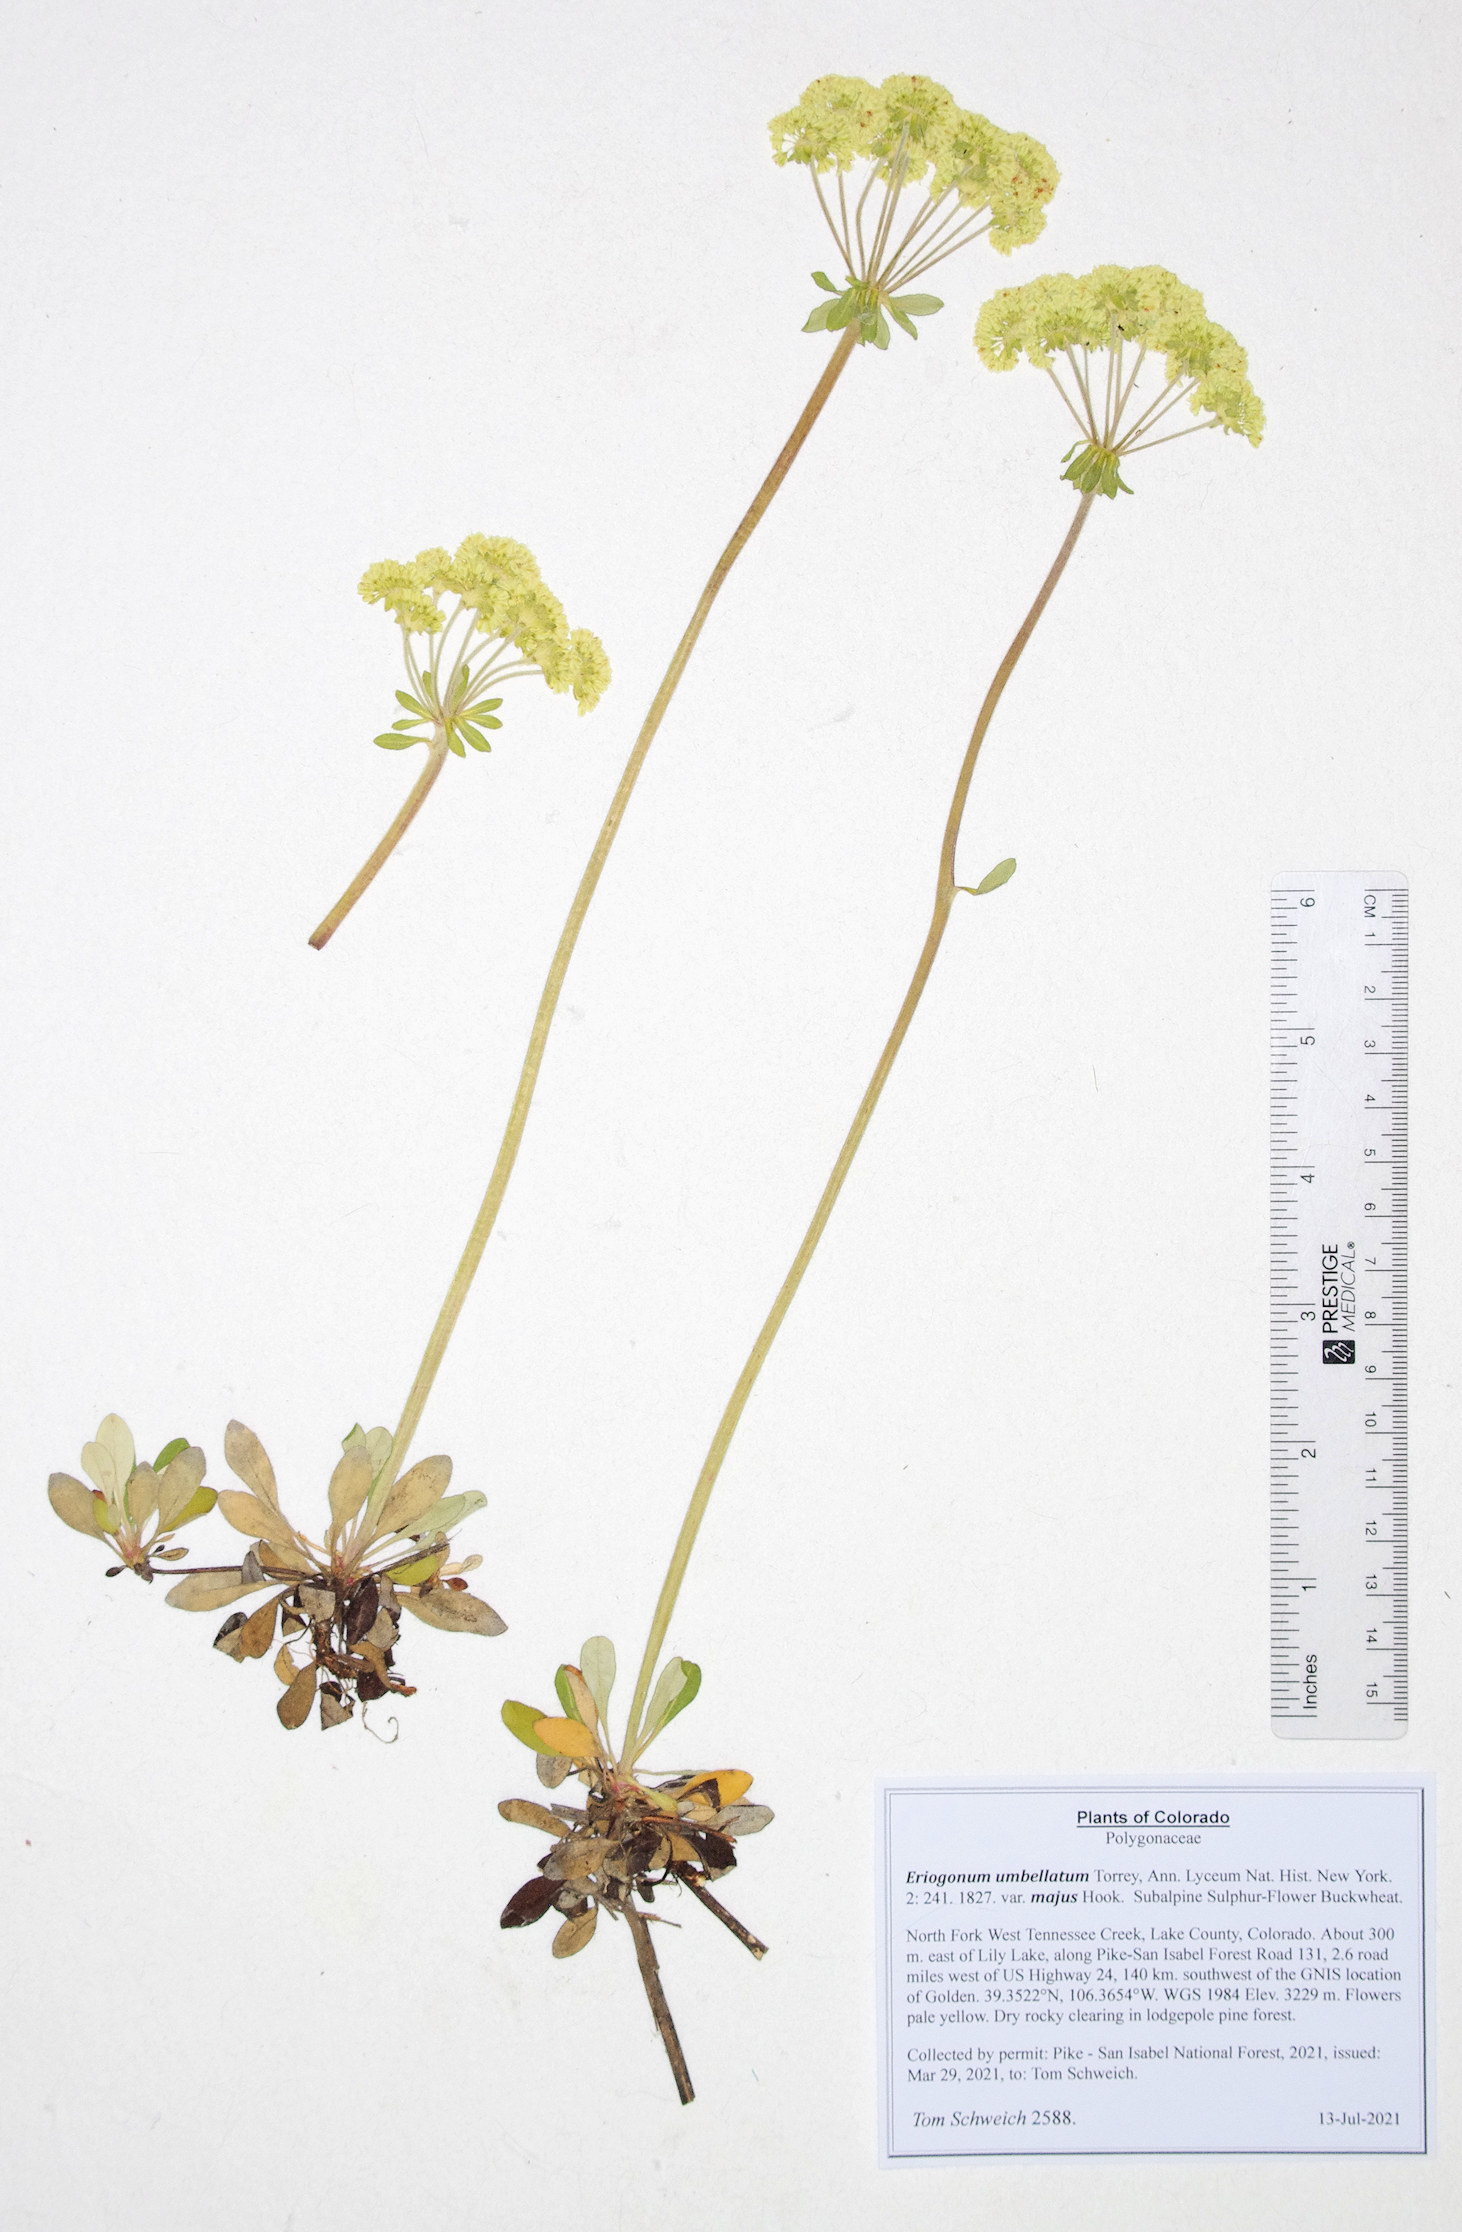 Polygonaceae Eriogonum umbellatum majus